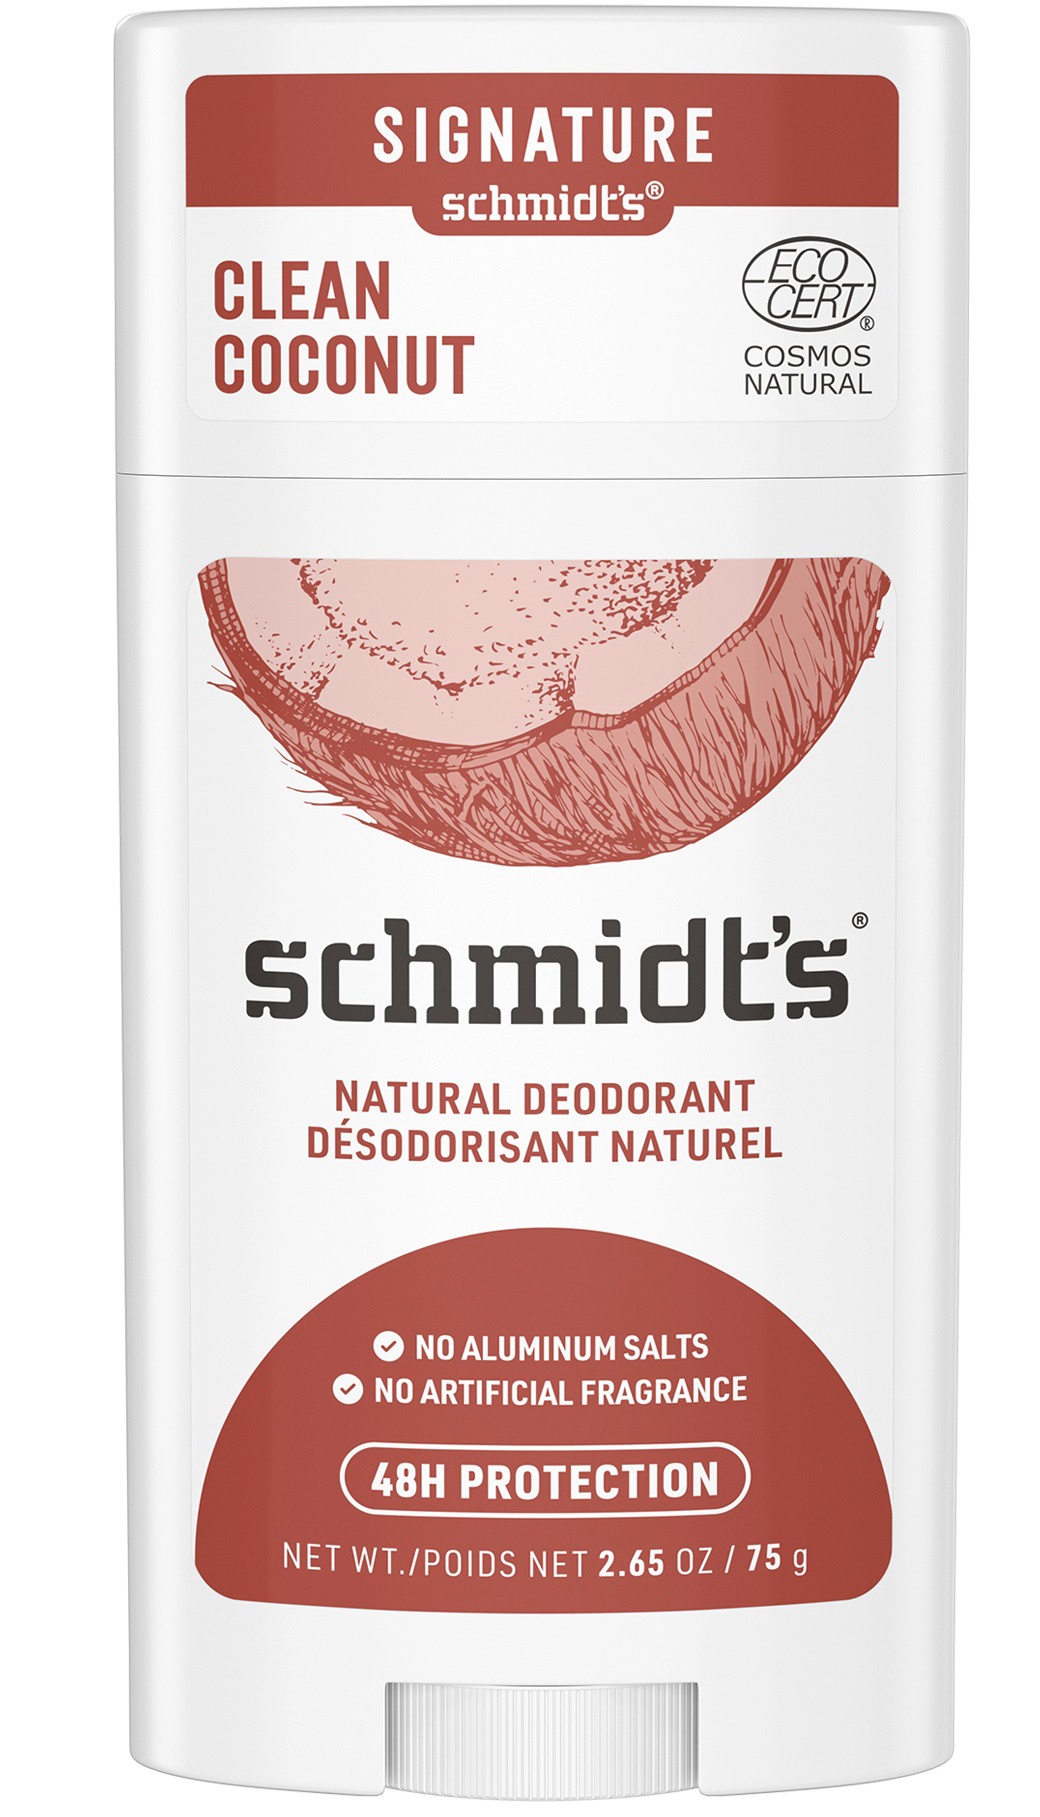 Schmidt's Naturals Deodorant Stick, Clean Coconut